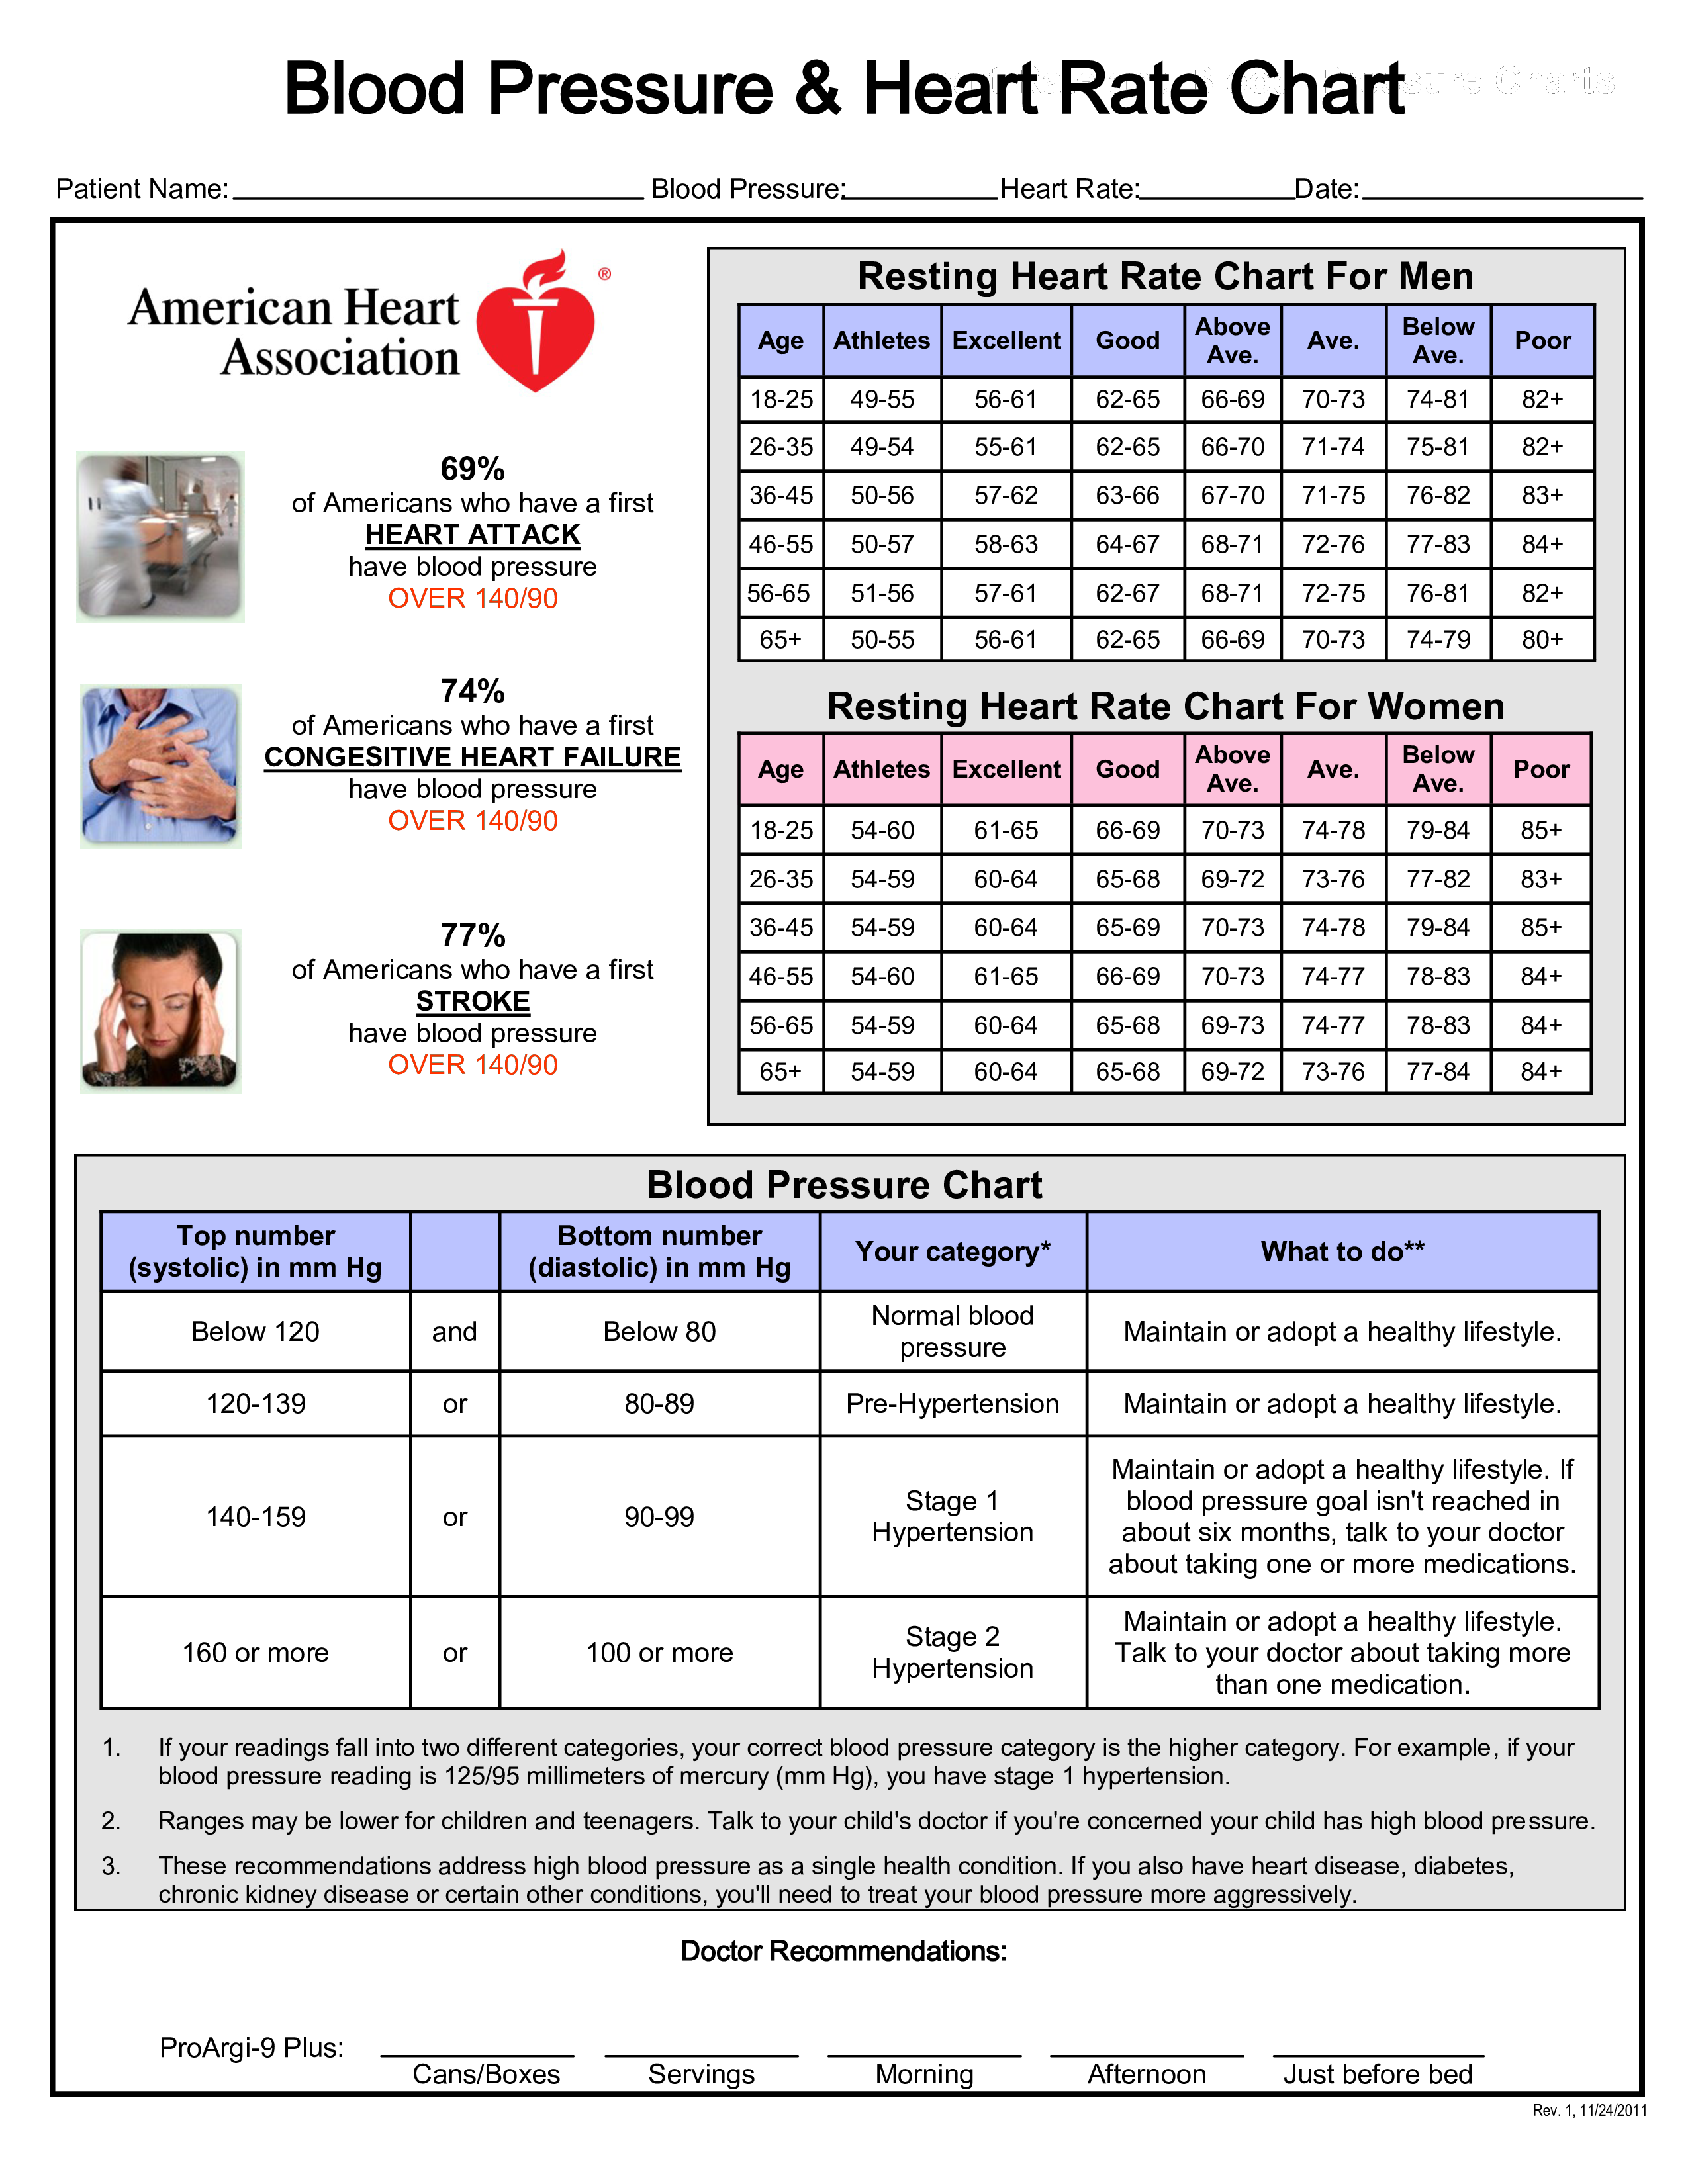 blood pressure pulse pdf chart log